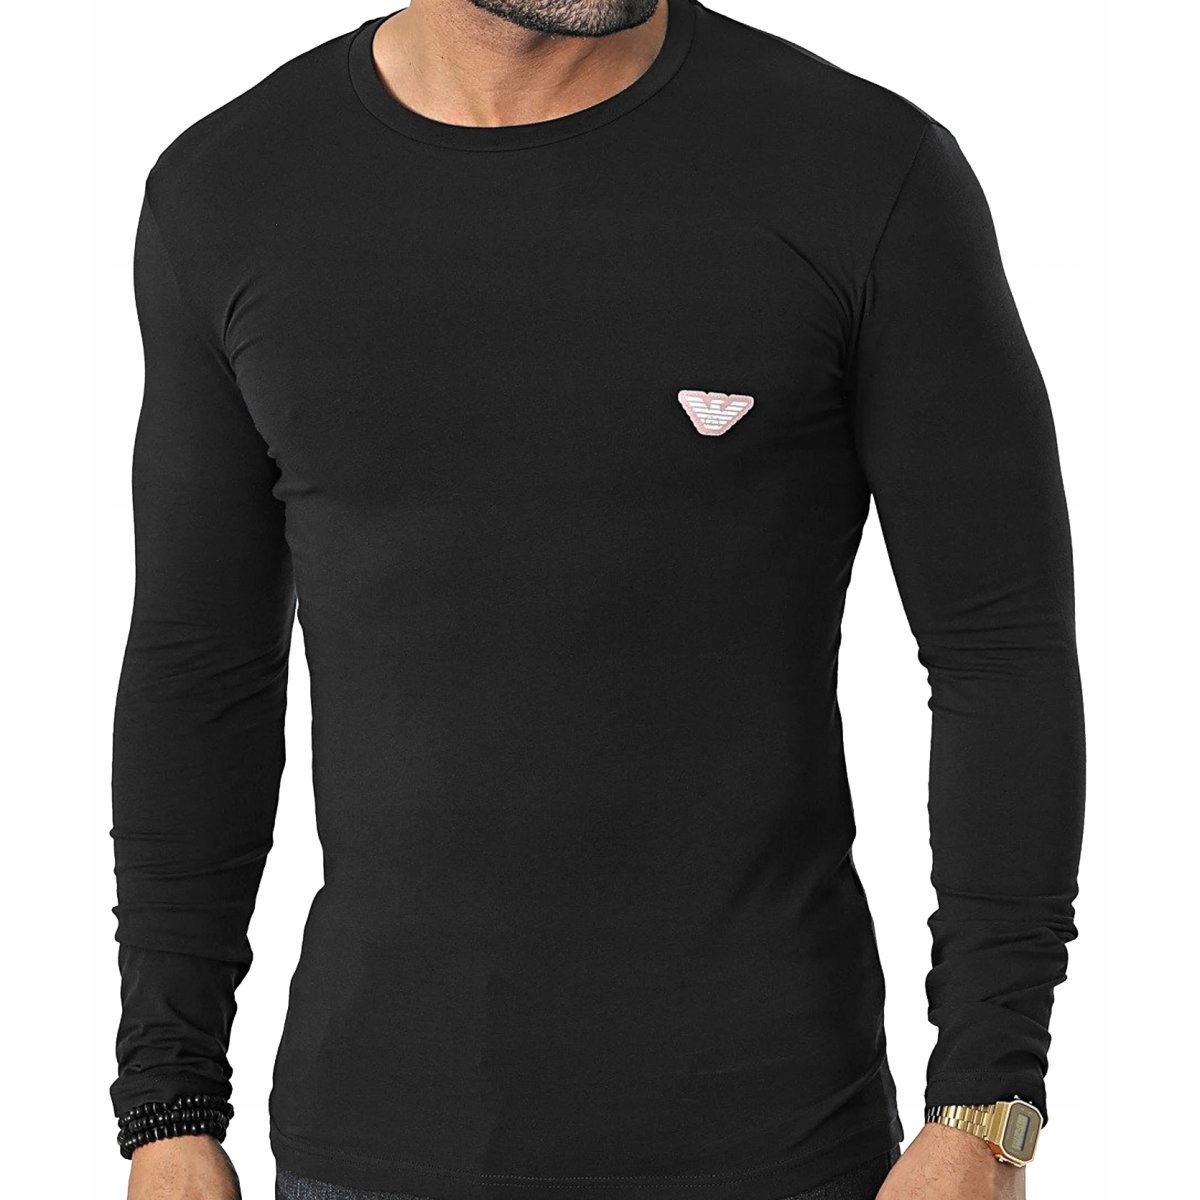 Emporio Armani pánske tričko longsleeve čierne 111023-3R512-0020 L